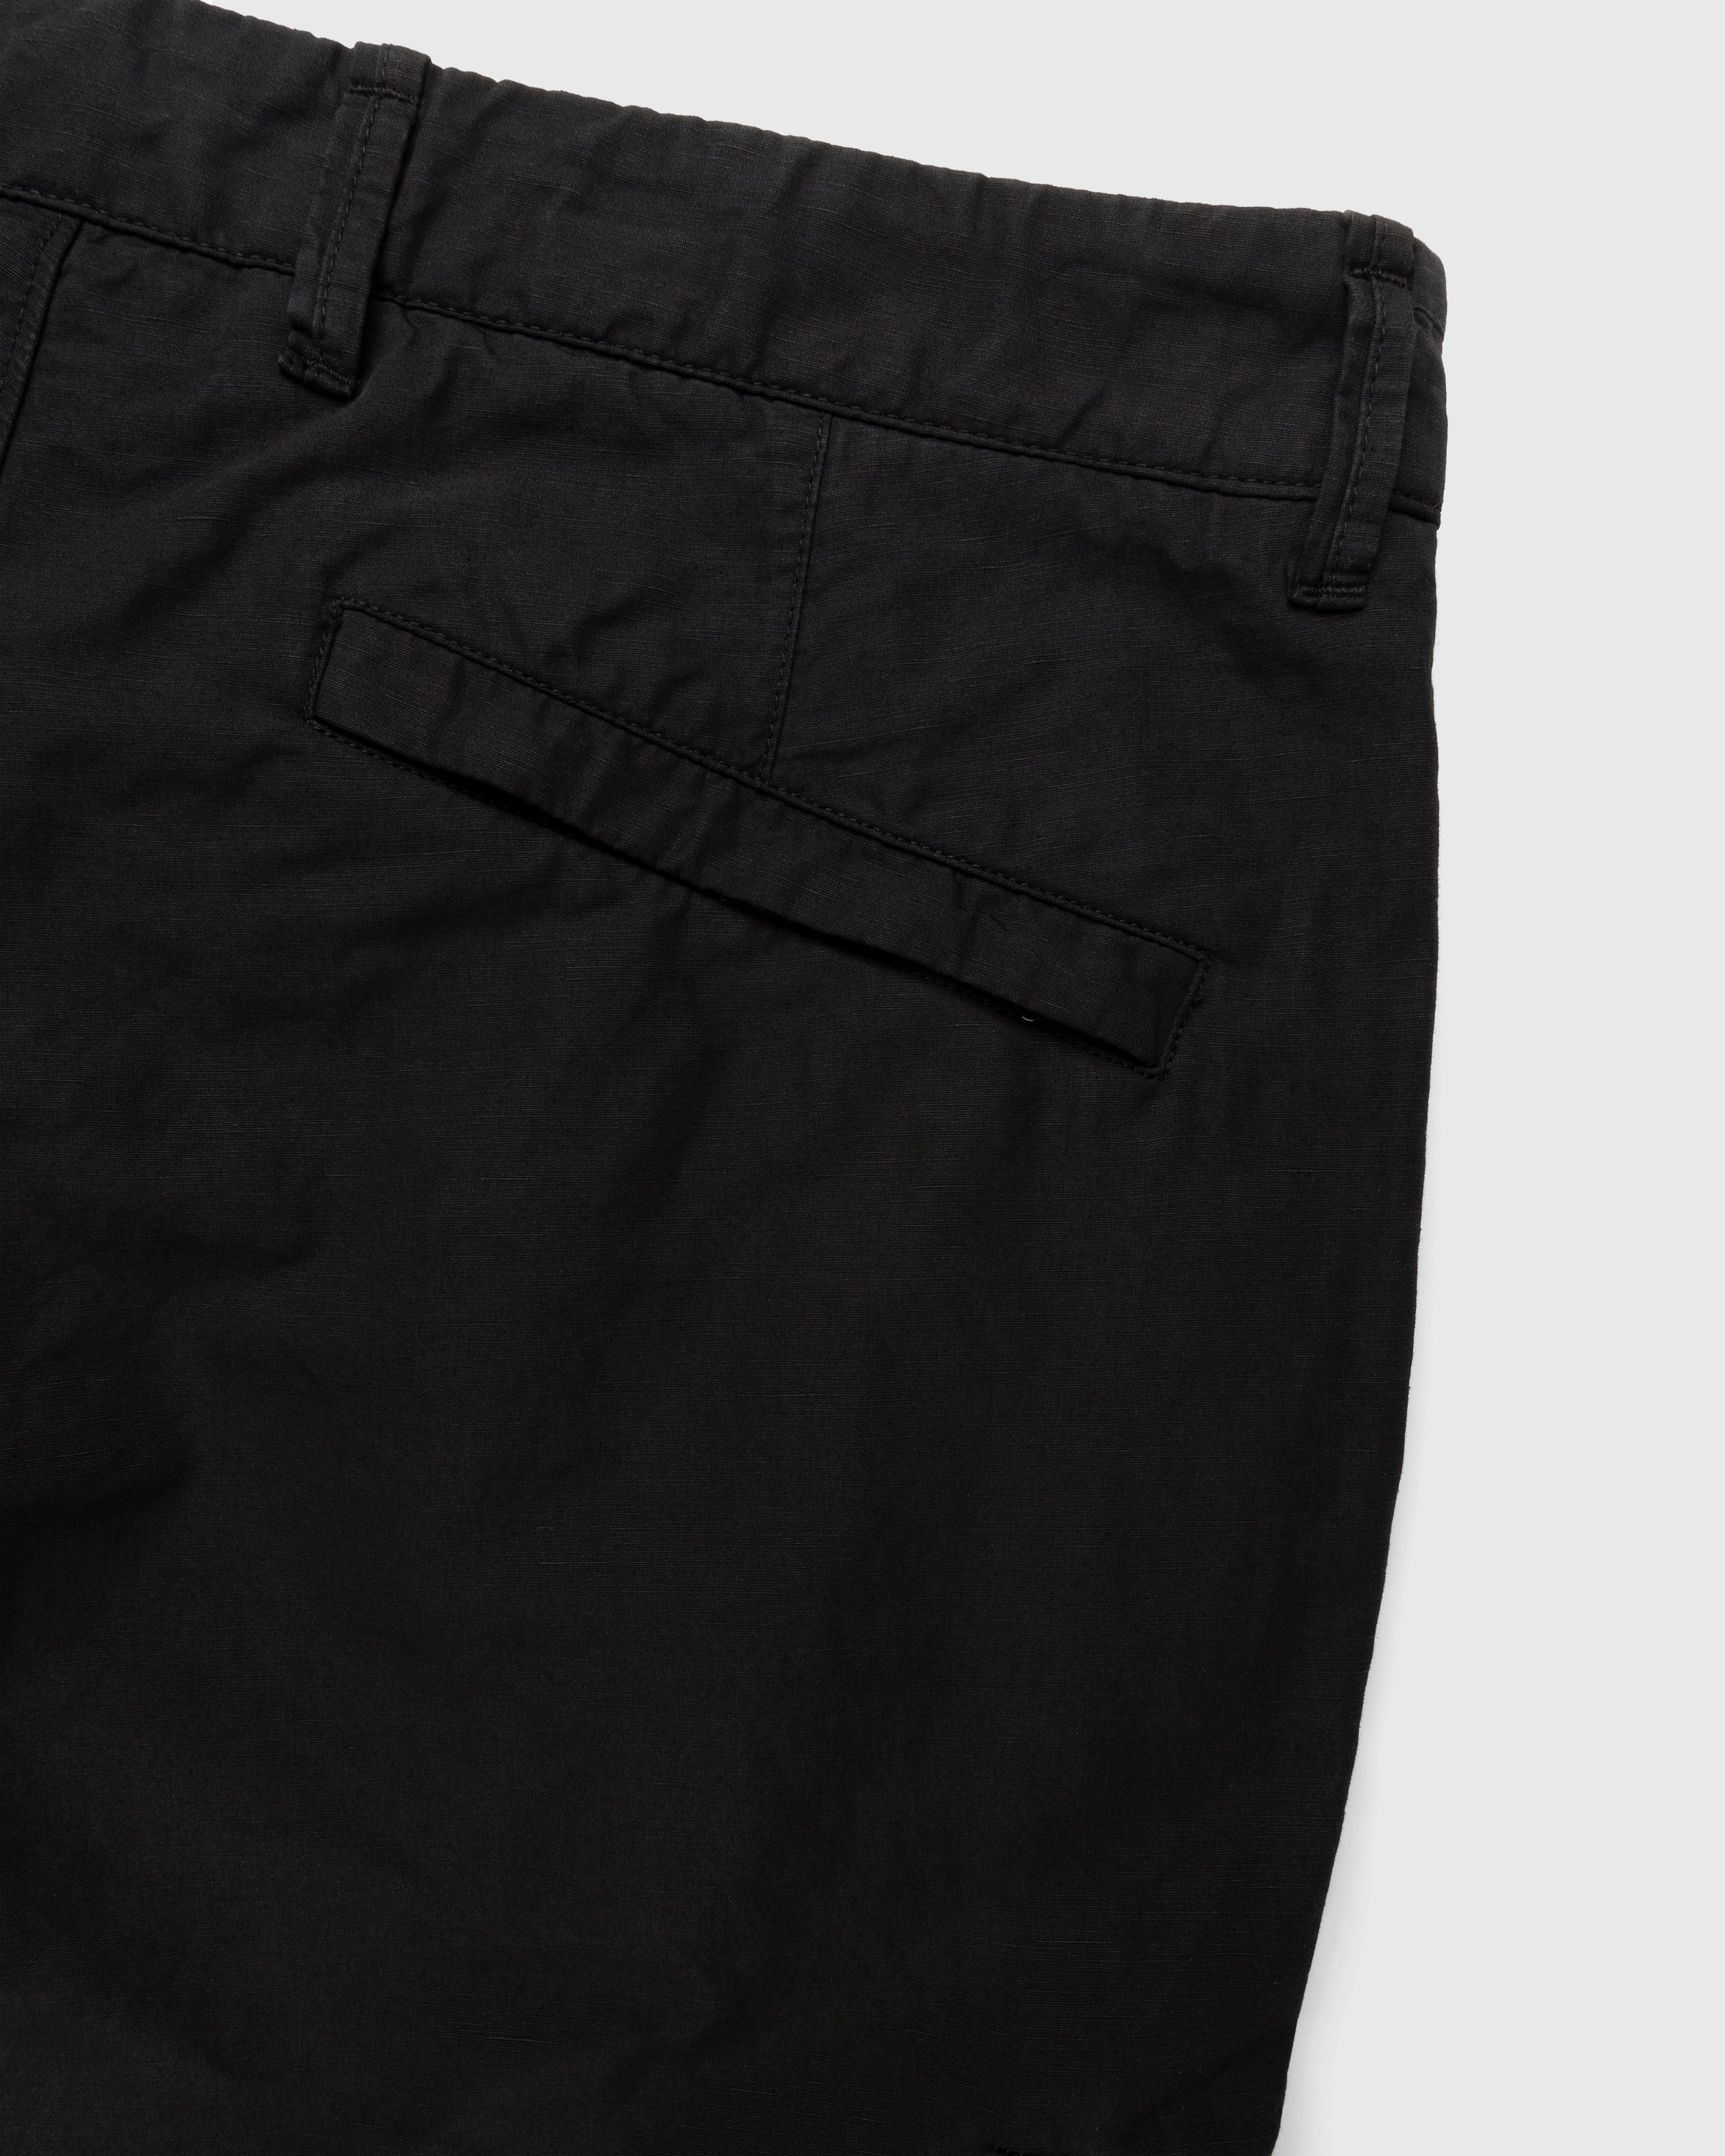 Stone Island - 31706 Garment-Dyed Cargo Pants Black - Clothing - Black - Image 6